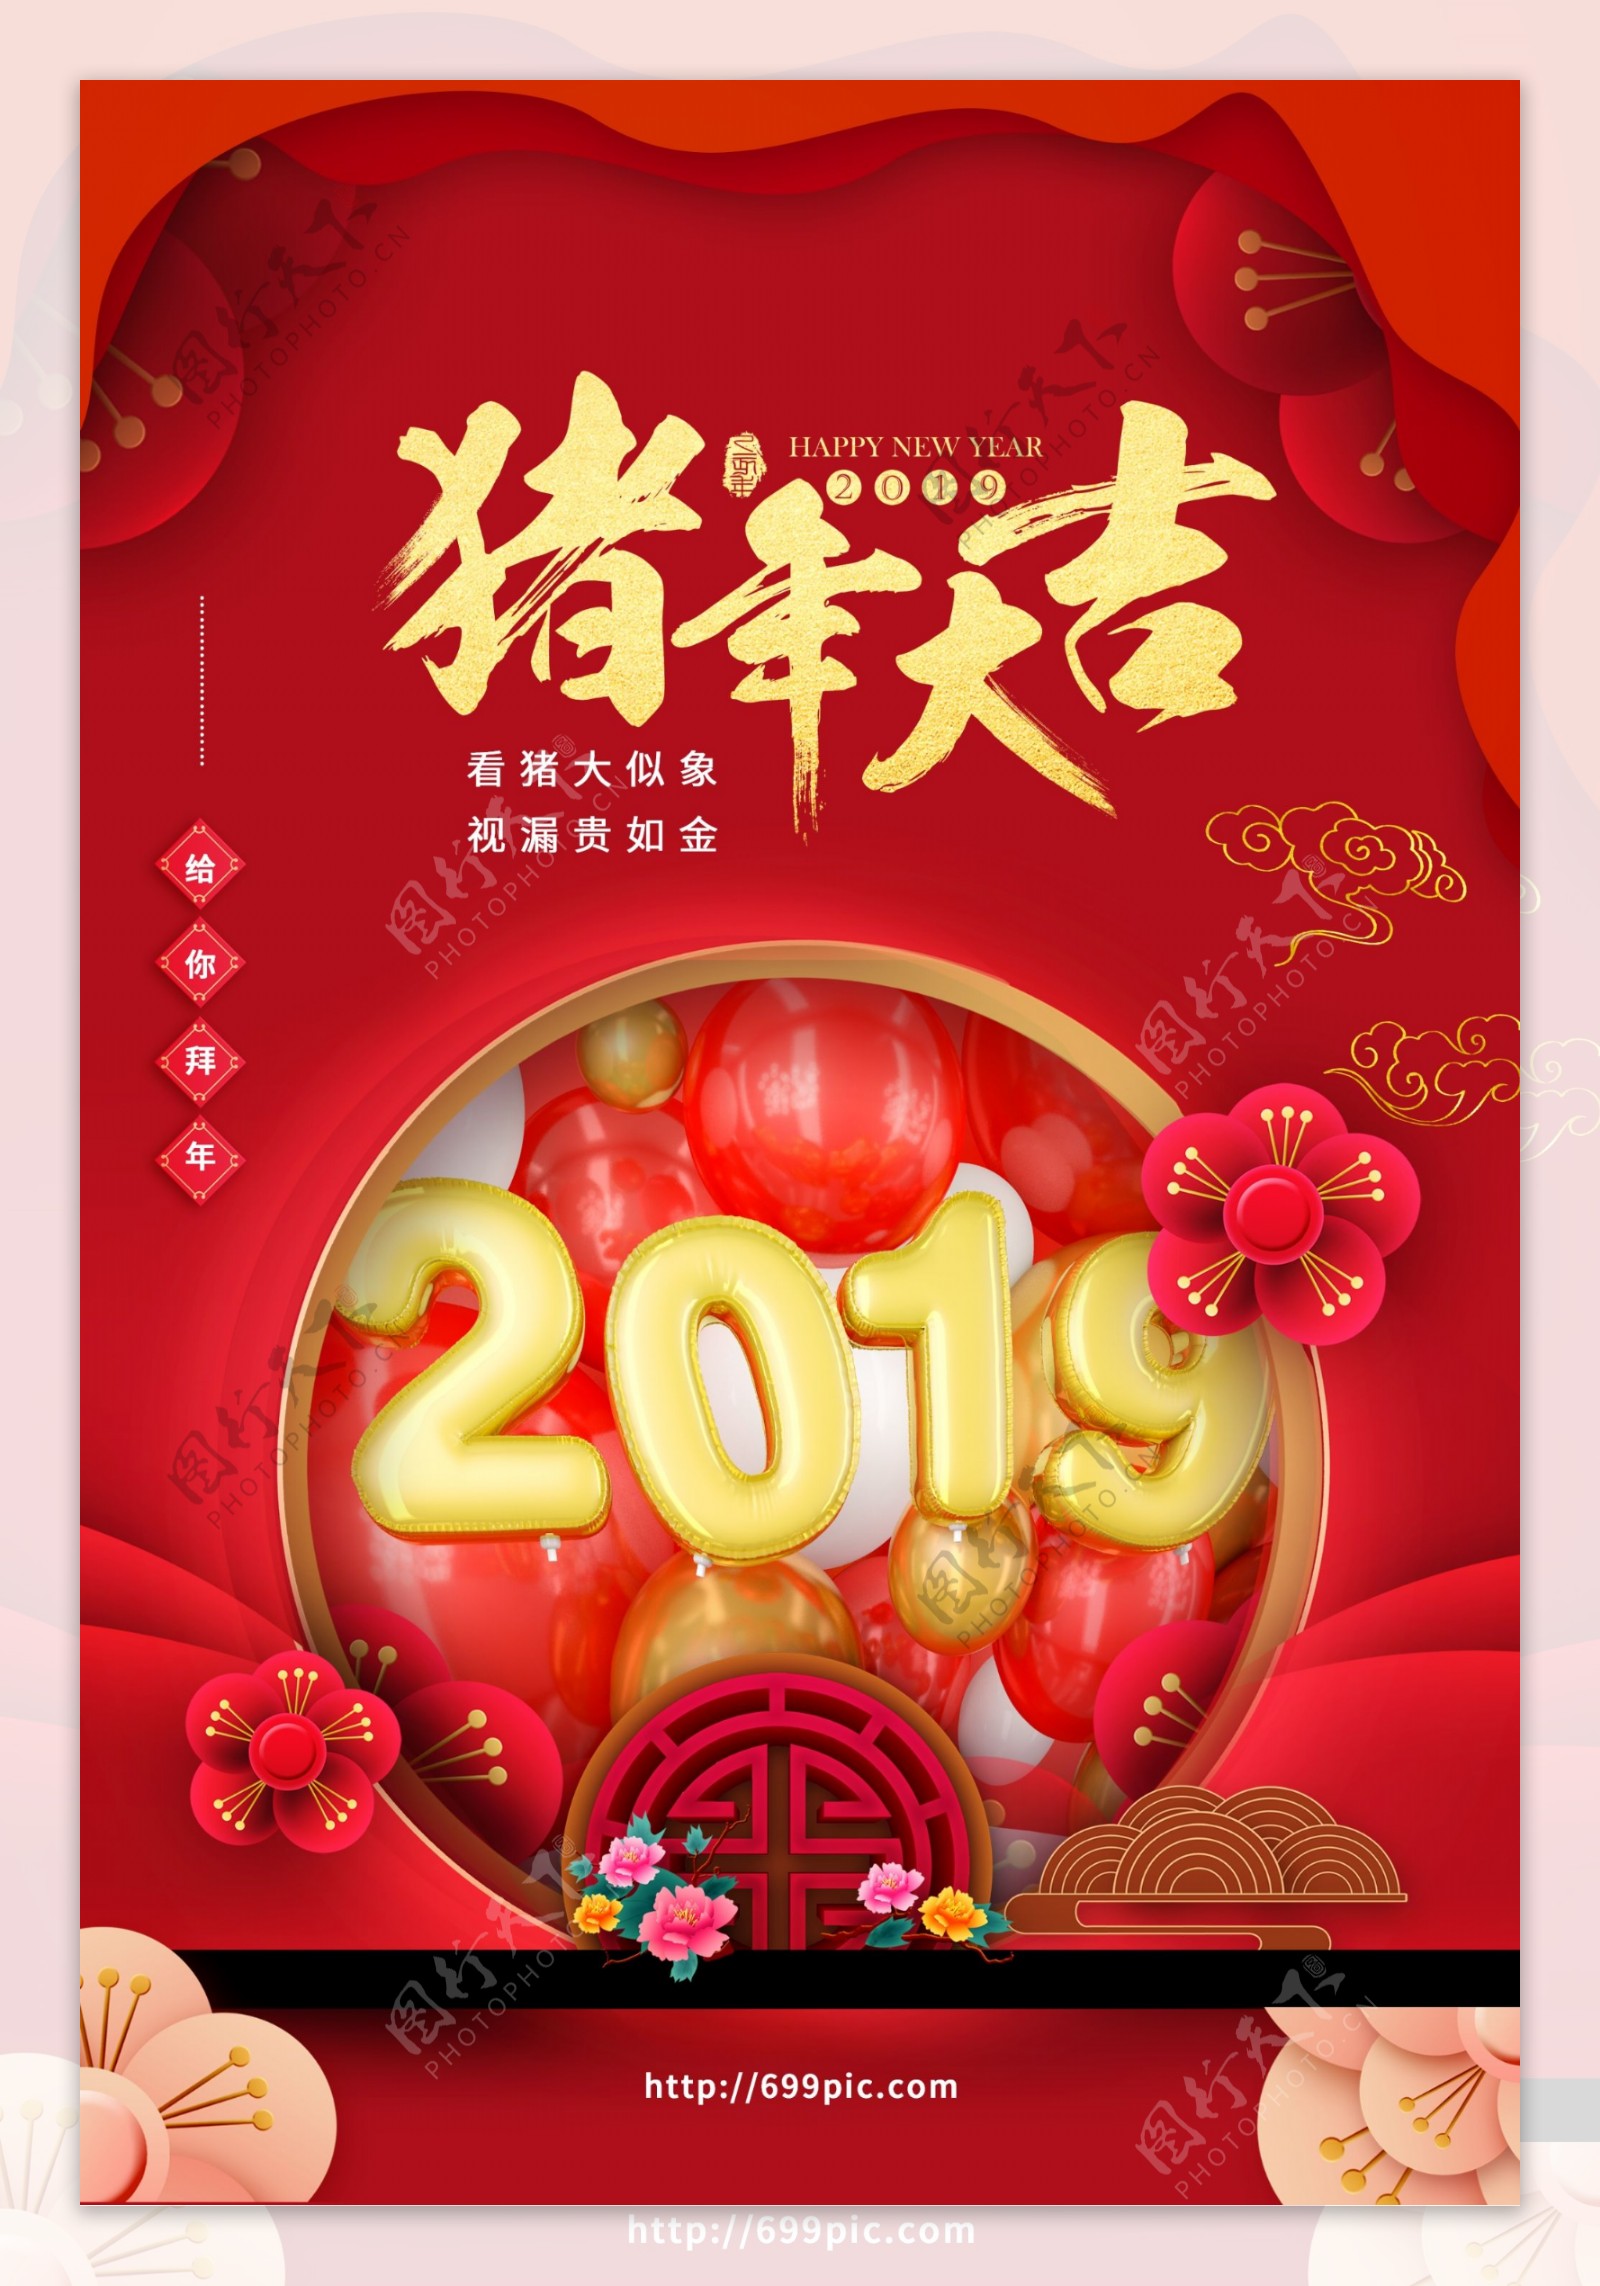 2019猪年大吉春节海报设计